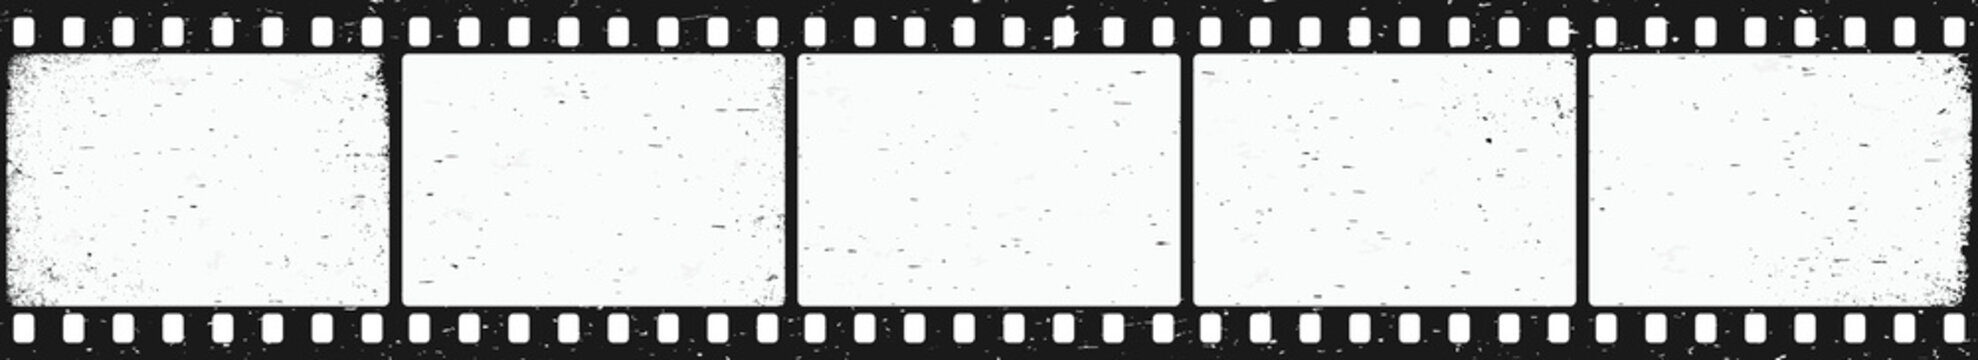 Old grunge movie film long strip vintage filmstrip